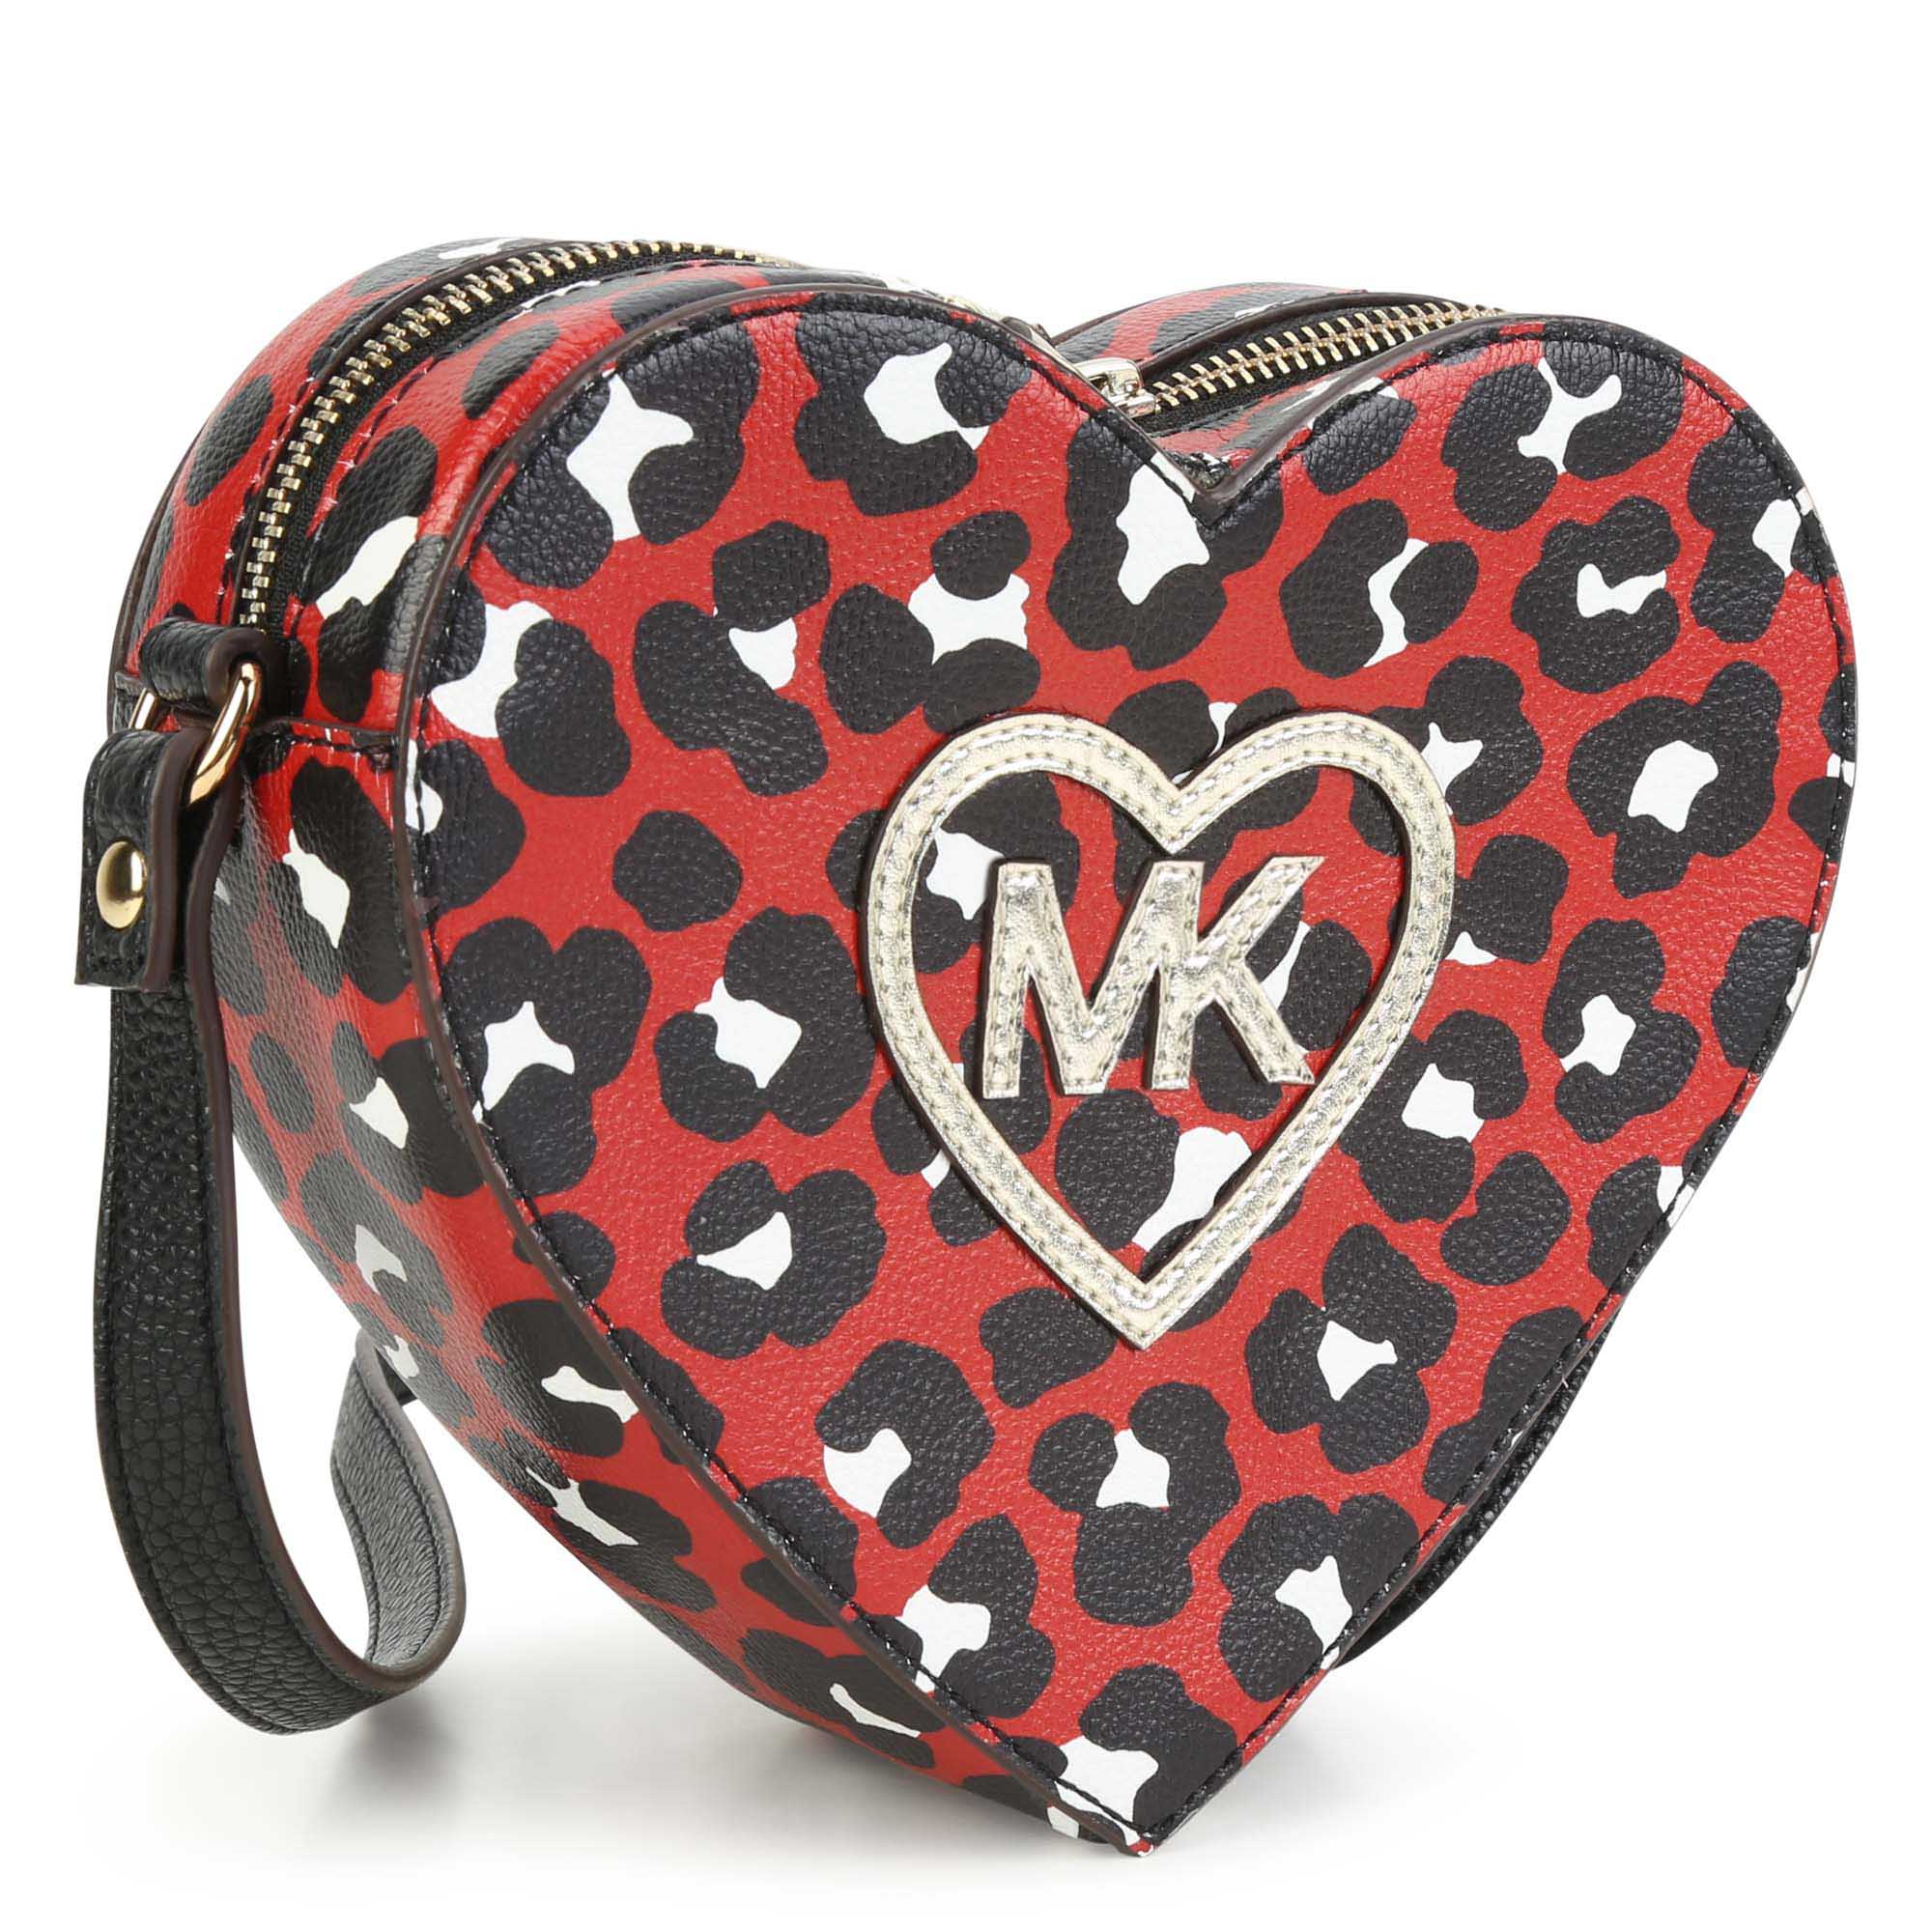 Leopard heart-shaped handbag MICHAEL KORS for GIRL